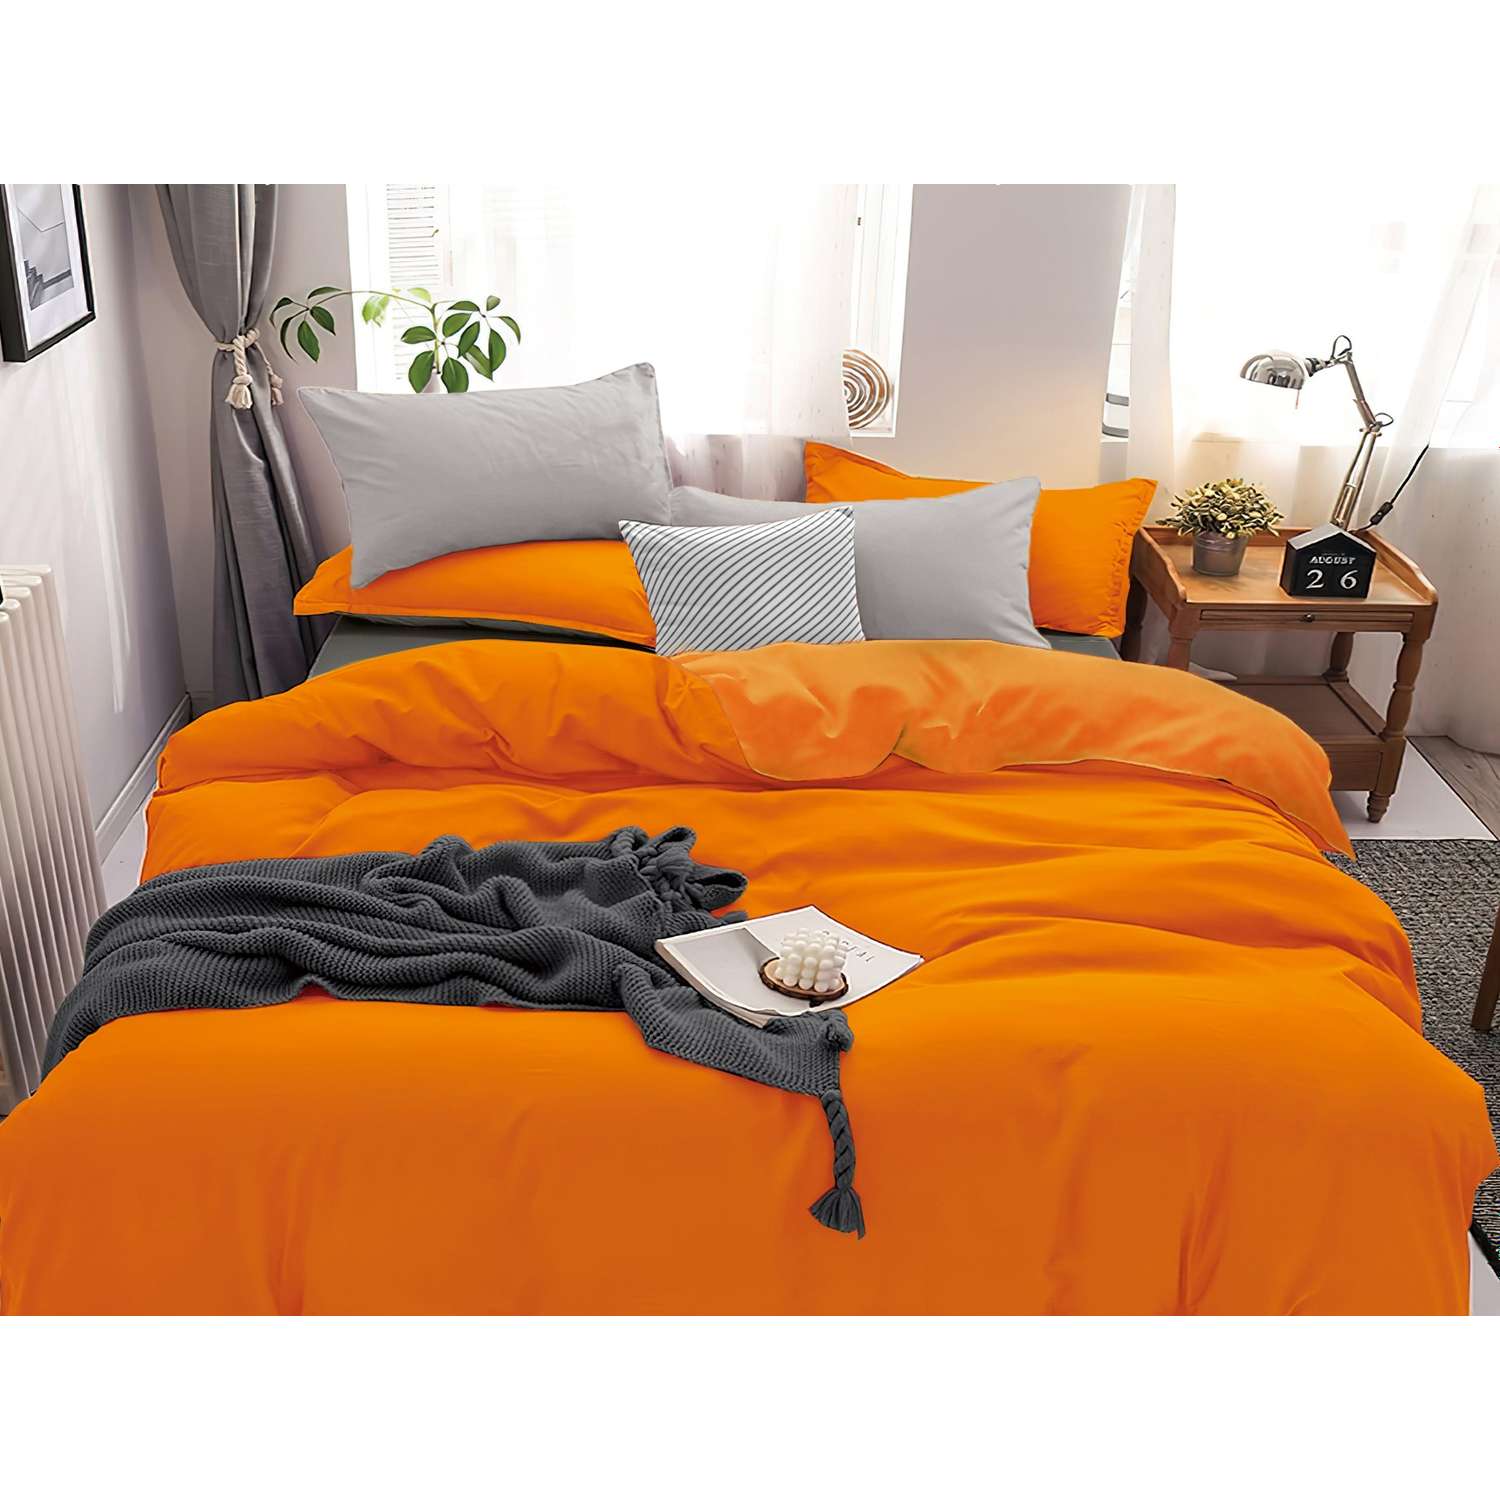 Комплект постельного белья PAVLine Манетти полисатин Евро оранжевый/серый S19 - фото 1